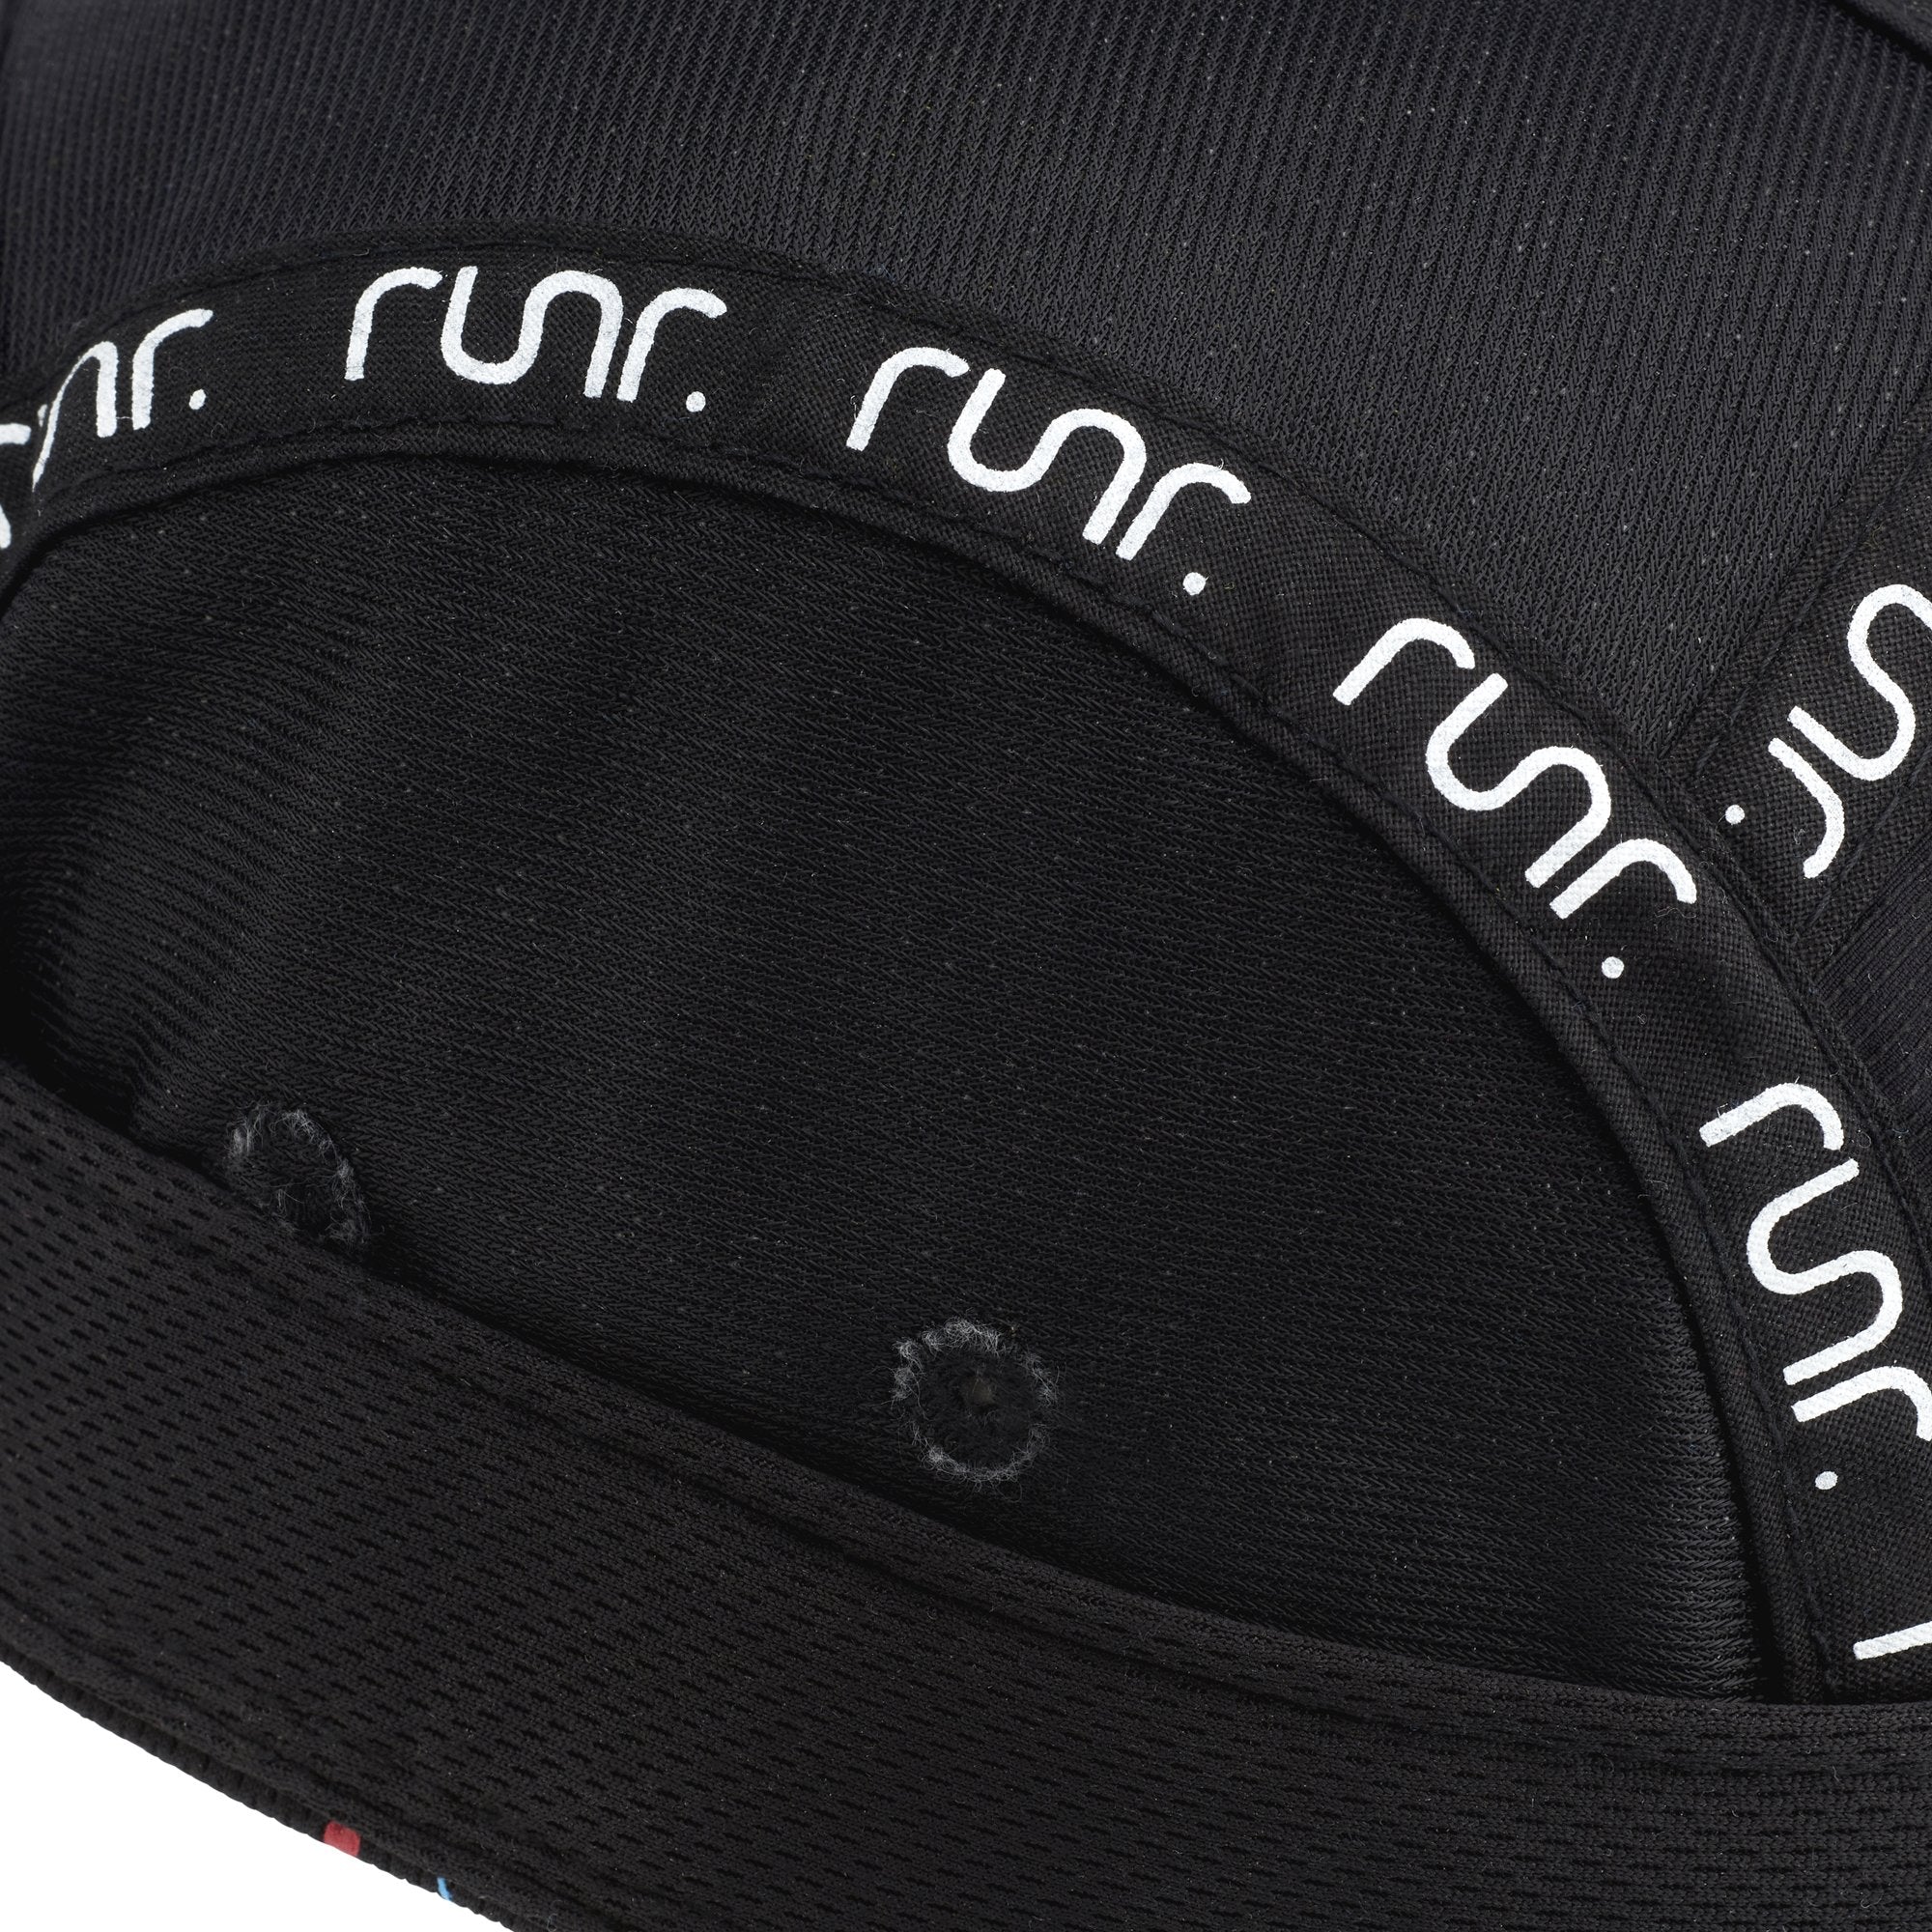 Runr Tokyo Technical Running Hat